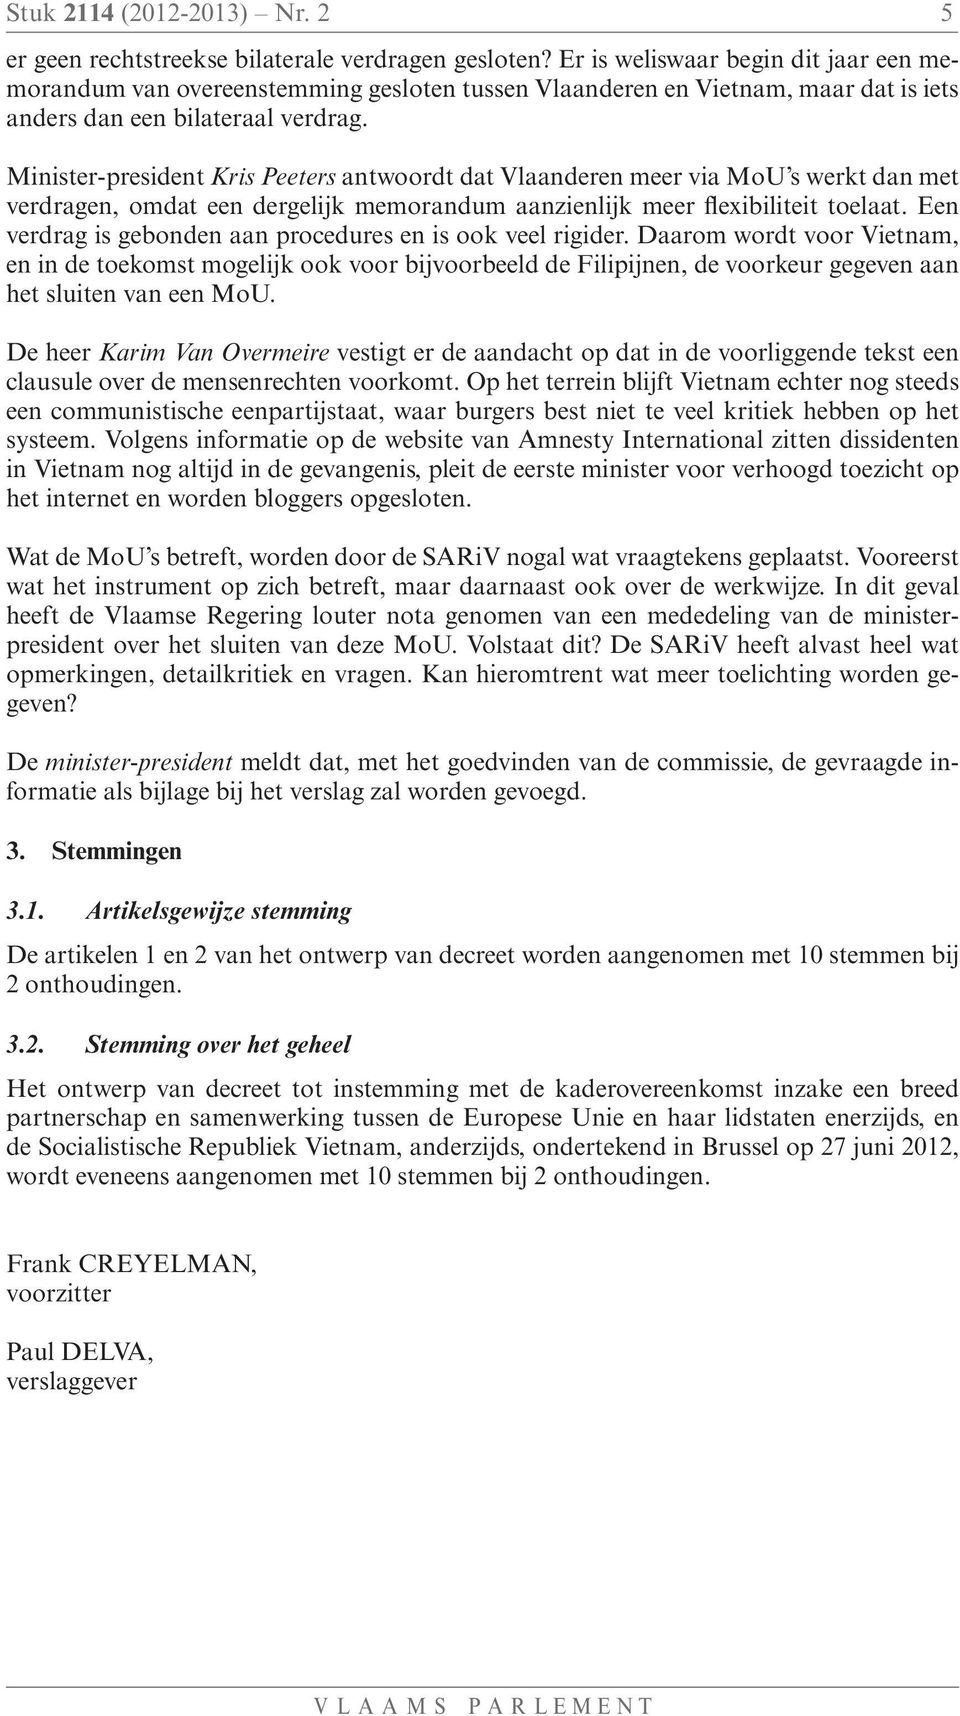 Minister-president Kris Peeters antwoordt dat Vlaanderen meer via MoU s werkt dan met verdragen, omdat een dergelijk memorandum aanzienlijk meer flexibiliteit toelaat.